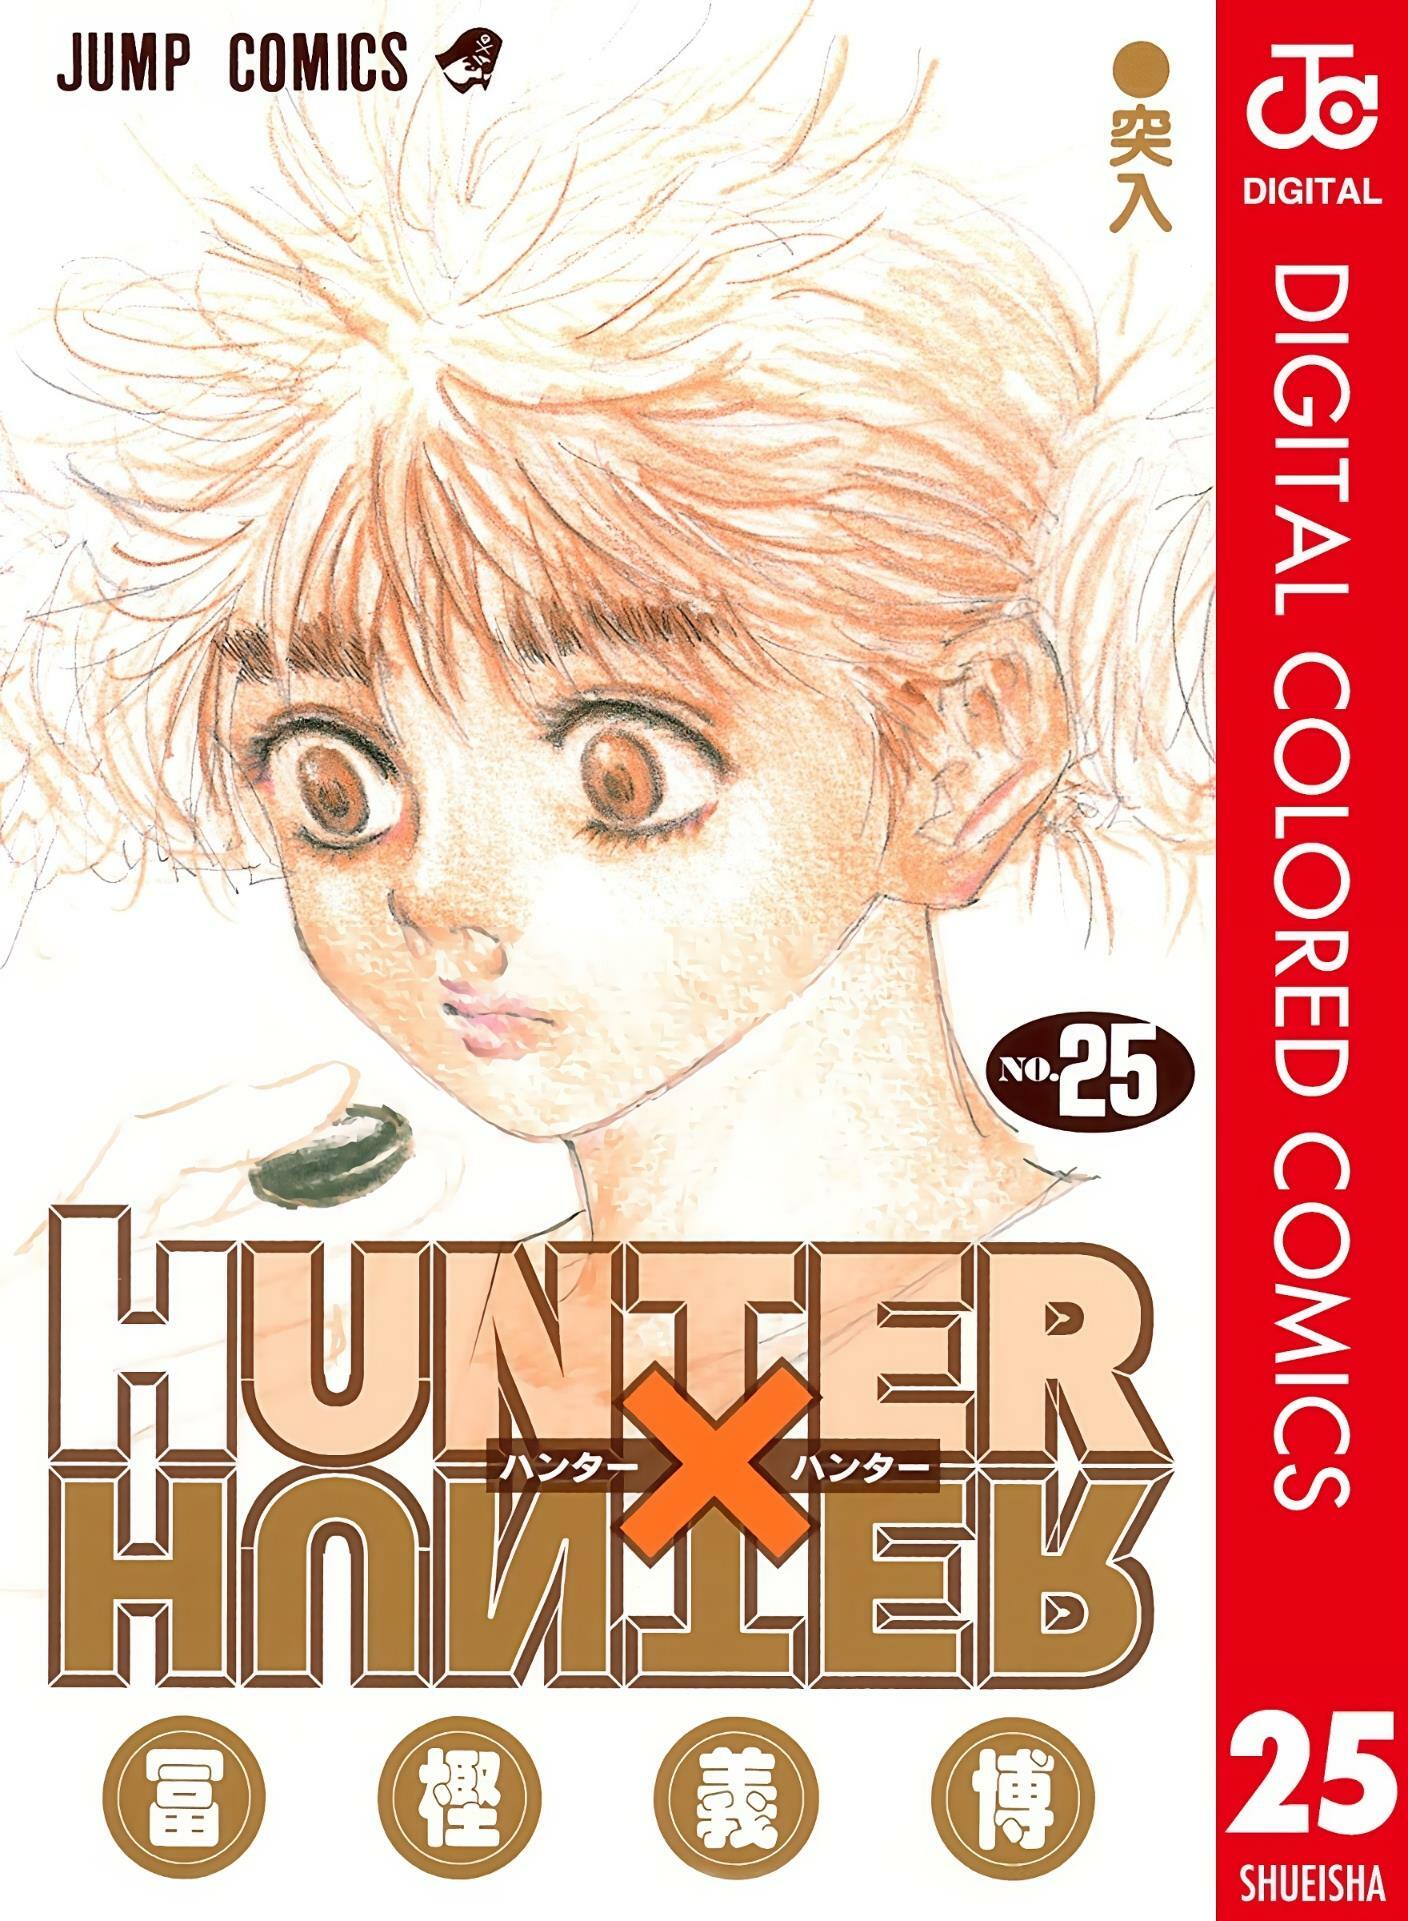 Hunter X Hunter, Chapter 69 - Hunter X Hunter Manga Online